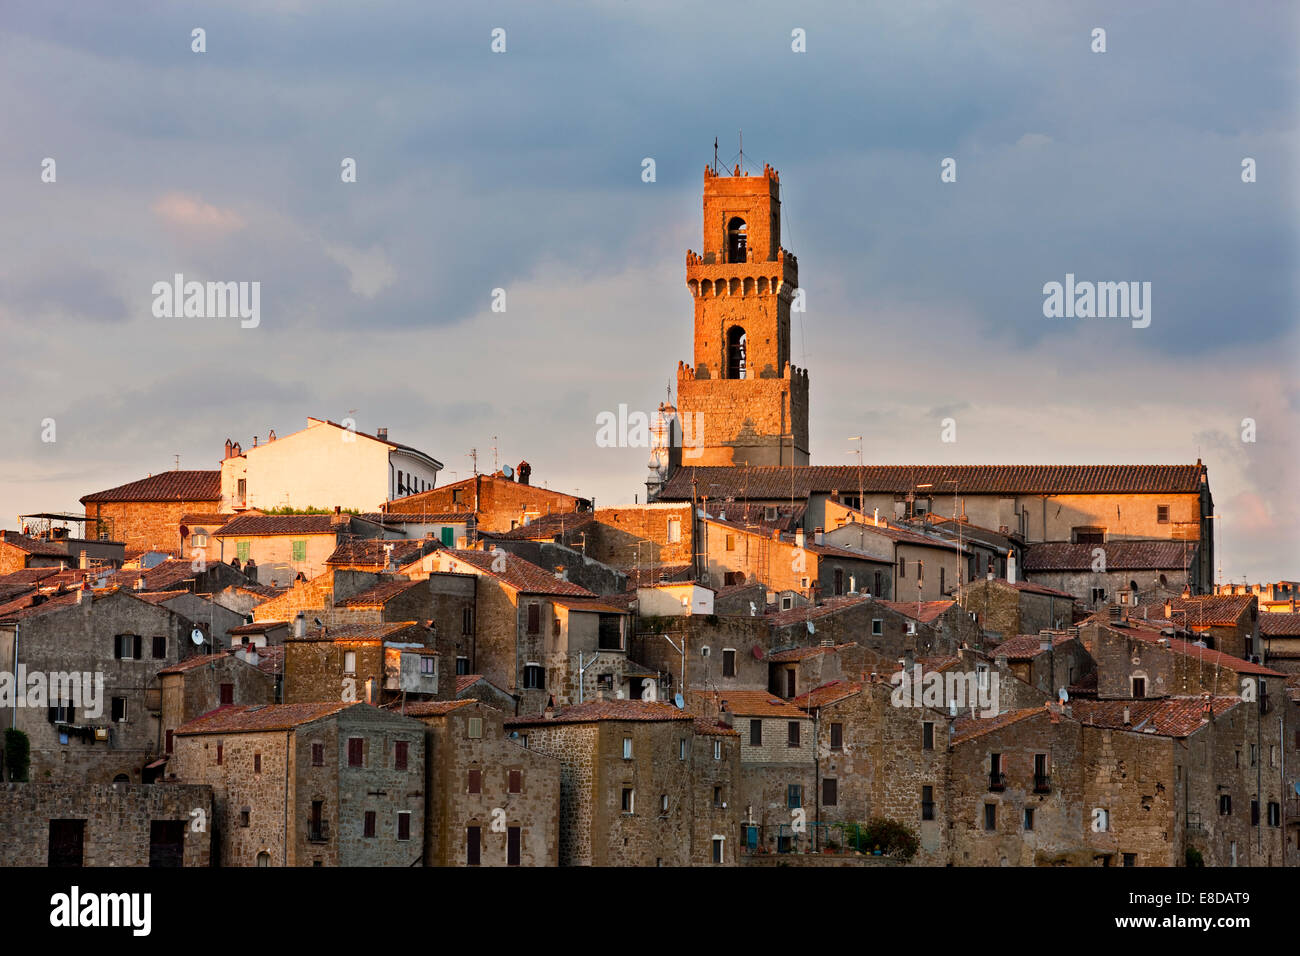 Pitigliano avec la tour de la santi Pietro e Paolo cathédrale dans la lumière du soir, Pitigliano, la Maremme, Province de Grosseto Banque D'Images